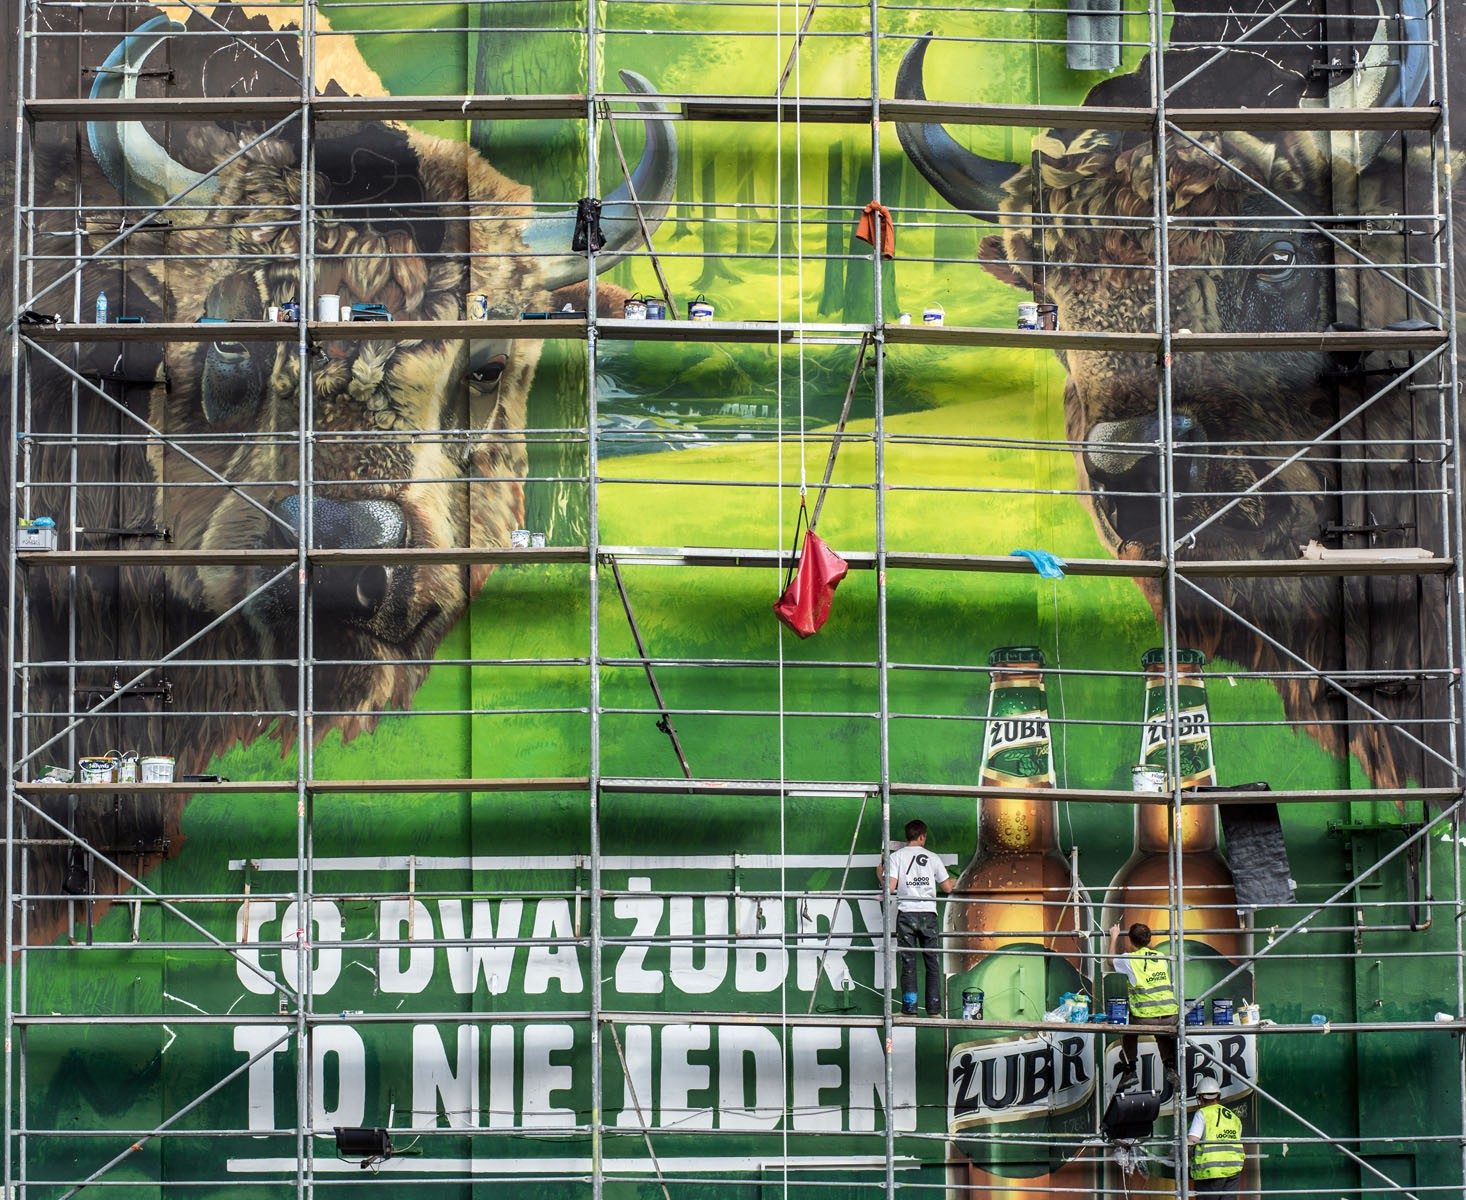 Zwei Wisente sind besser als einer Außenwandbild Werbung für Biermarke Żubr Warschau Bracka Warenhaus Dom Towarowy Bracia Jablkowscy | Zwei Wisente sind besser als einer | Portfolio